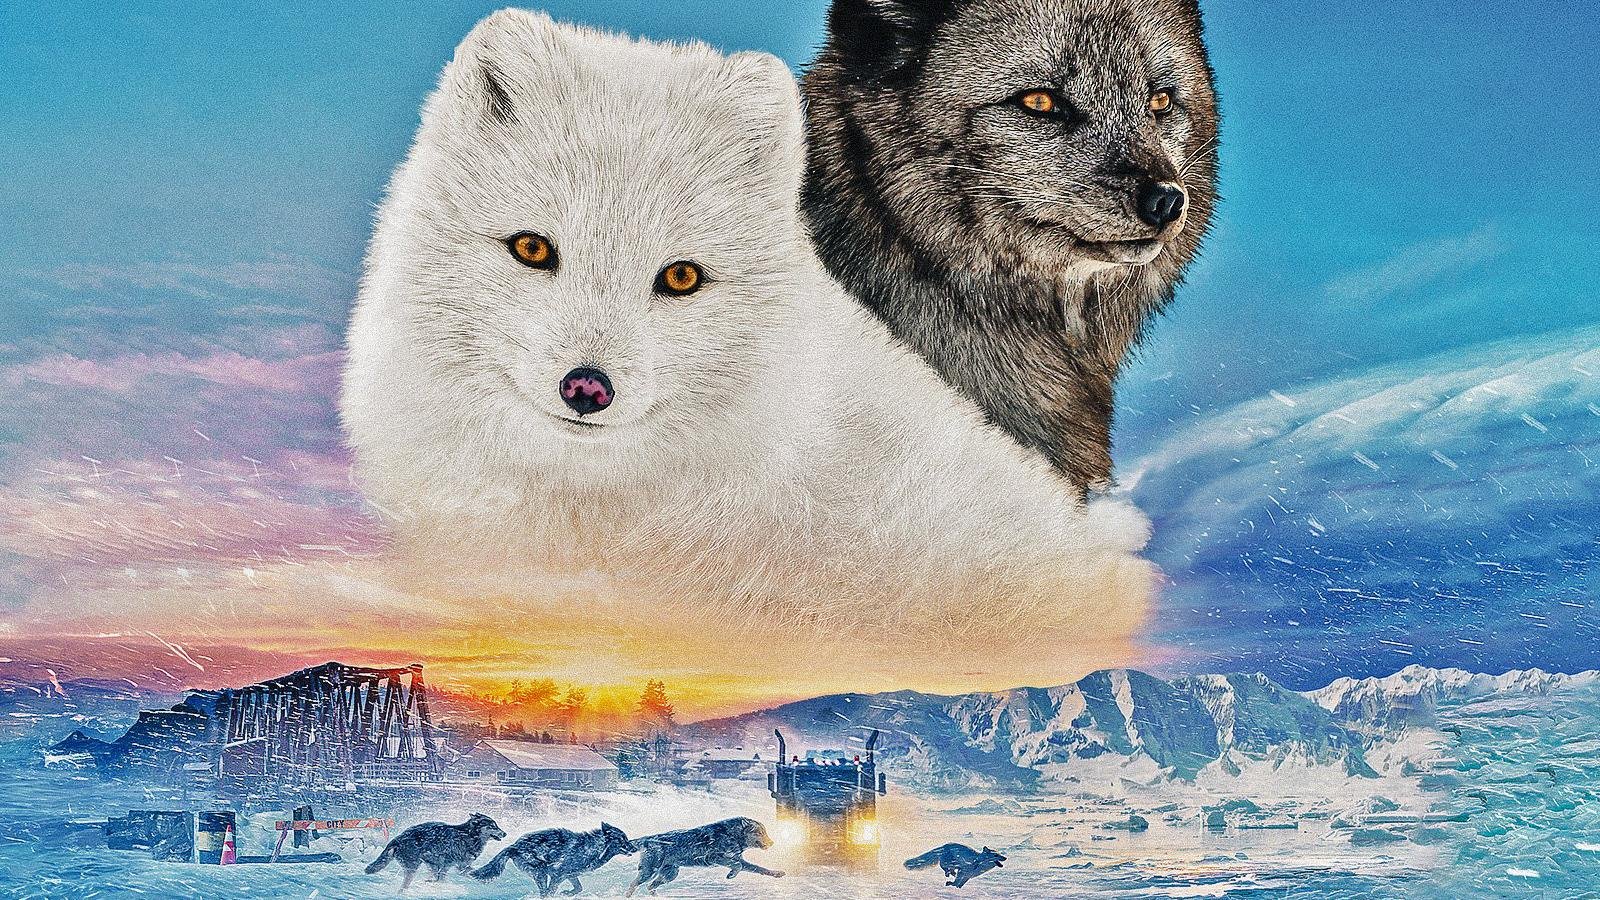 Kina e Yuk alla scoperta del mondo, la recensione: il viaggio nella natura di due volpi artiche